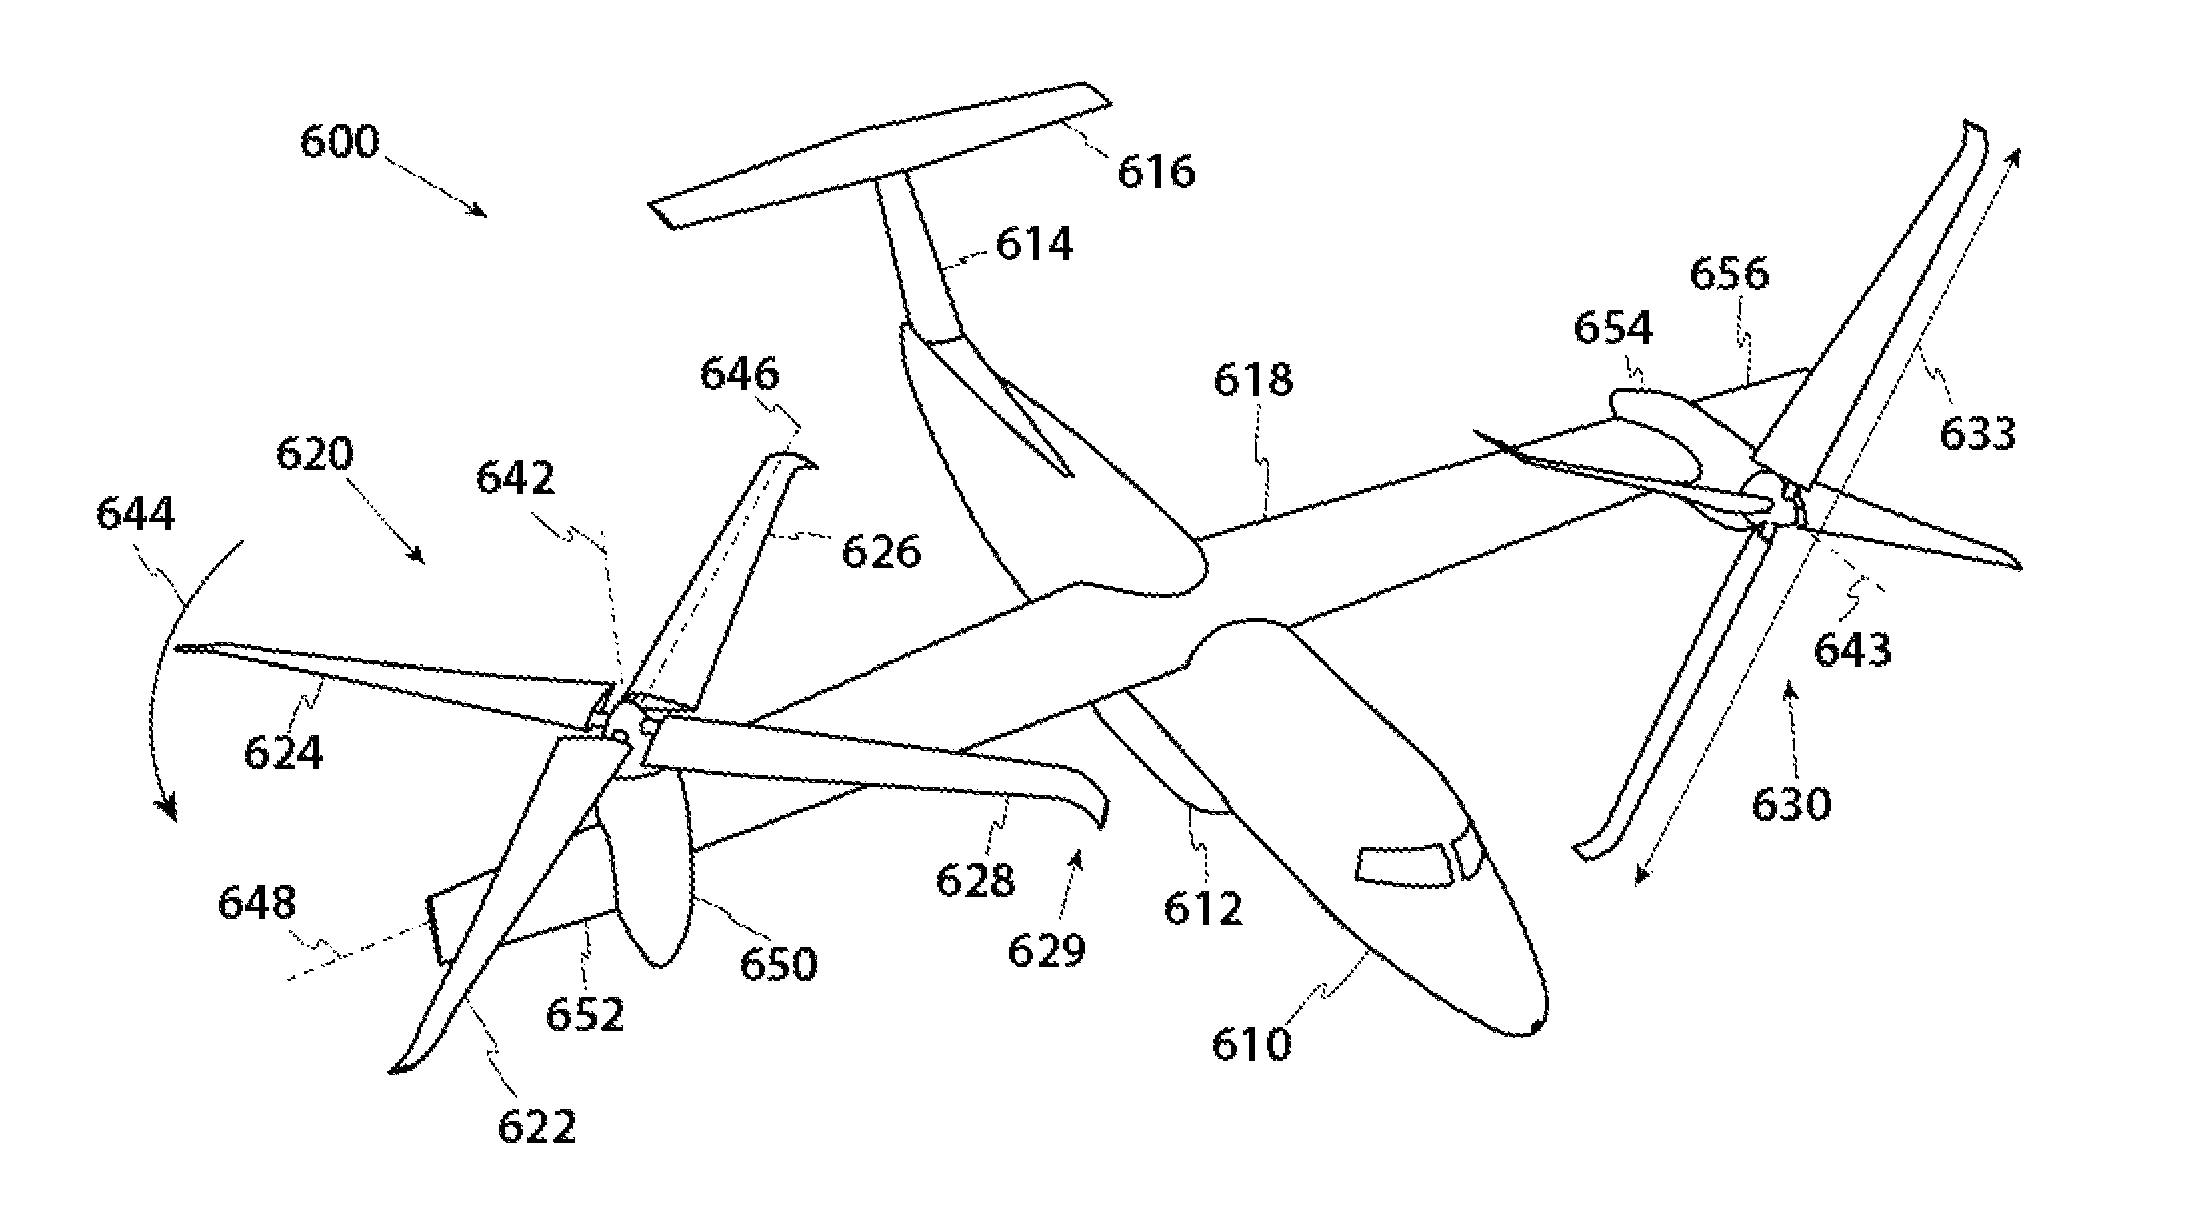 Anhedral tip blades for tiltrotor aircraft